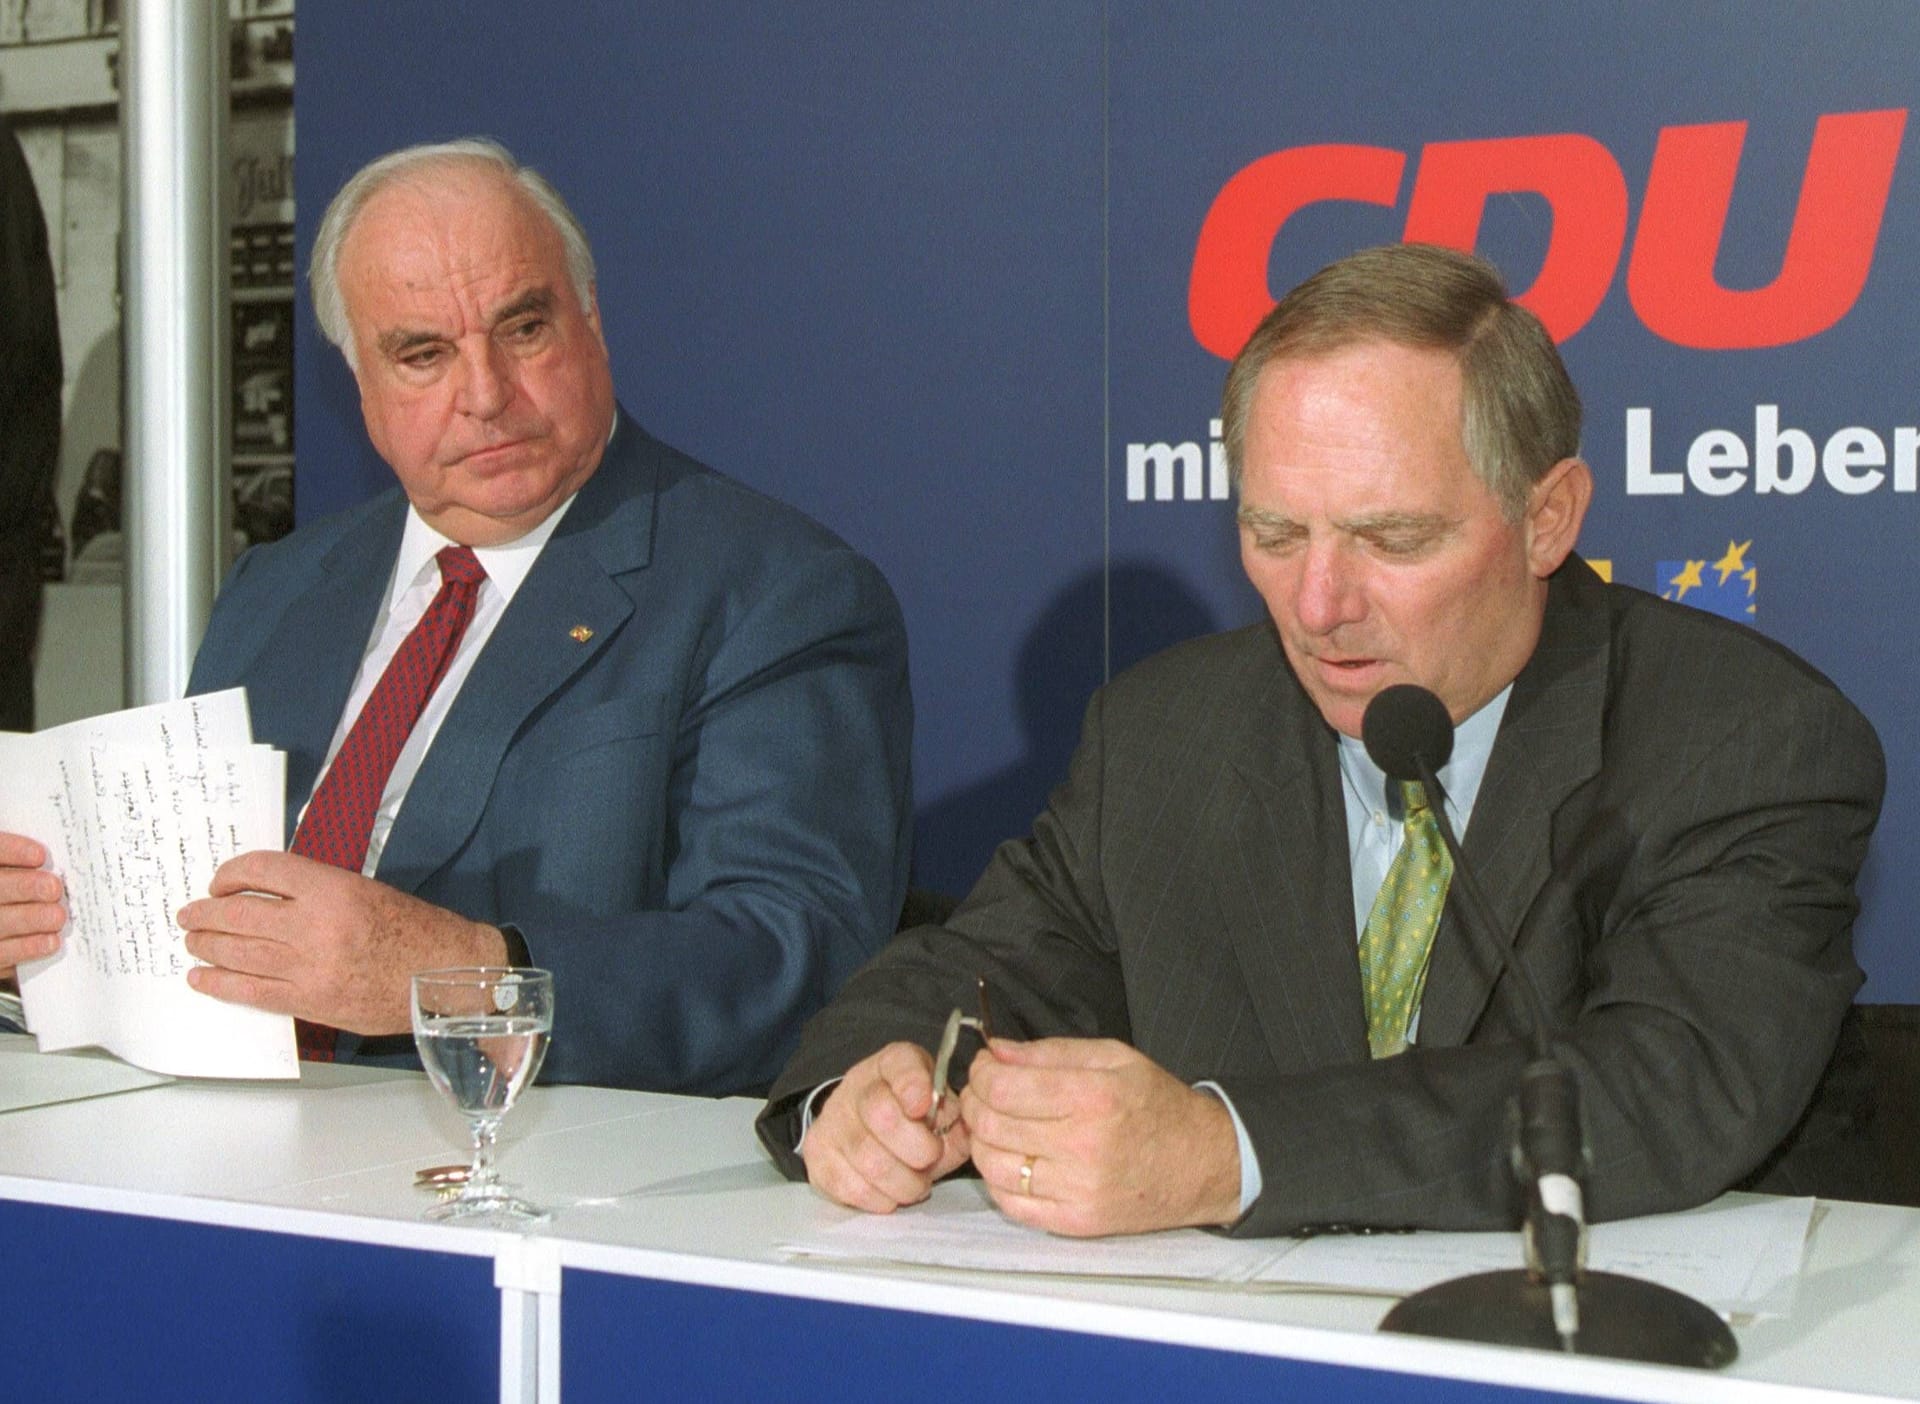 Seit 1991 war Schäuble nicht mehr Minister, sondern der Vorsitzende der CDU-Fraktion im Bundestag. 1998 wurde er zudem Parteivorsitzender. Beide Ämter legte er 2000 im Zuge der Spendenaffäre der CDU nieder.